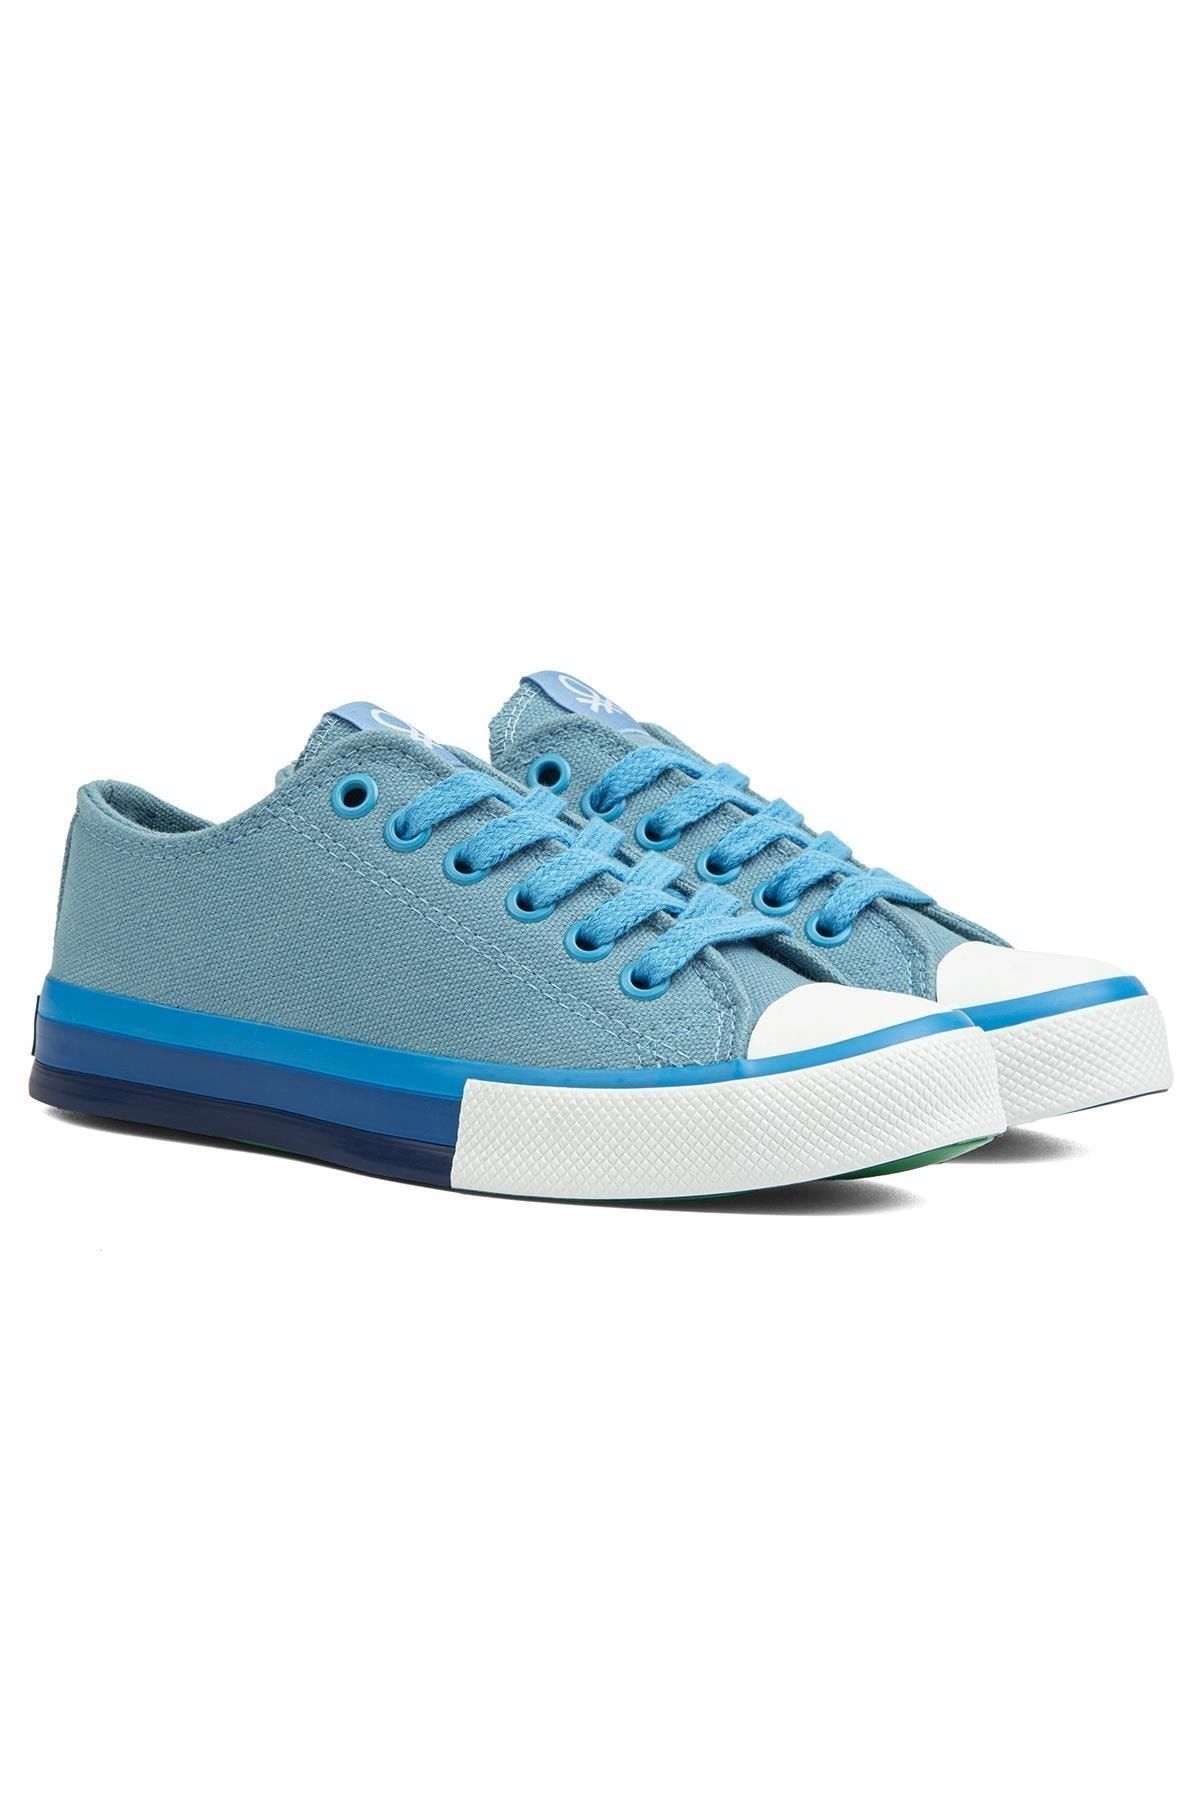 Benetton ® | BN-90176 - Mavi - Kadın Spor Ayakkabı